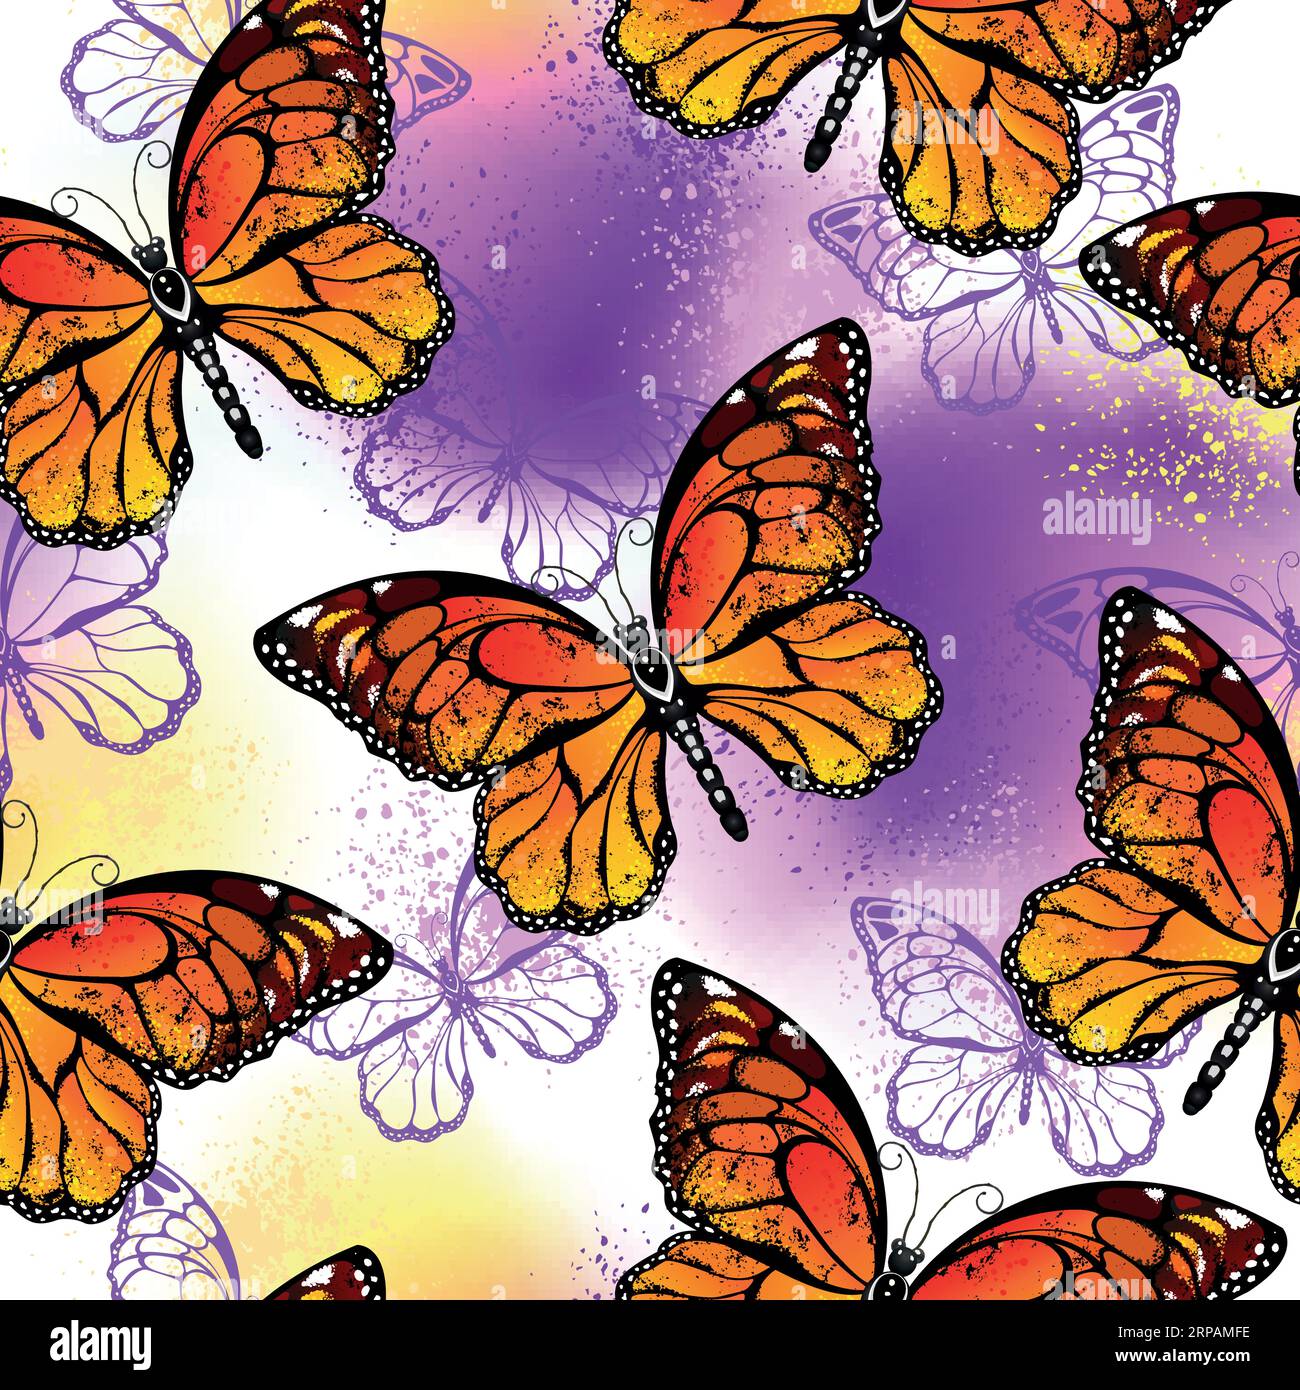 Nahtloses Muster aus künstlerisch gezeichneten, lebhaften, orangefarbenen Monarchfalter auf violettem und gelbem Hintergrund. Monarch-Schmetterling. Stock Vektor